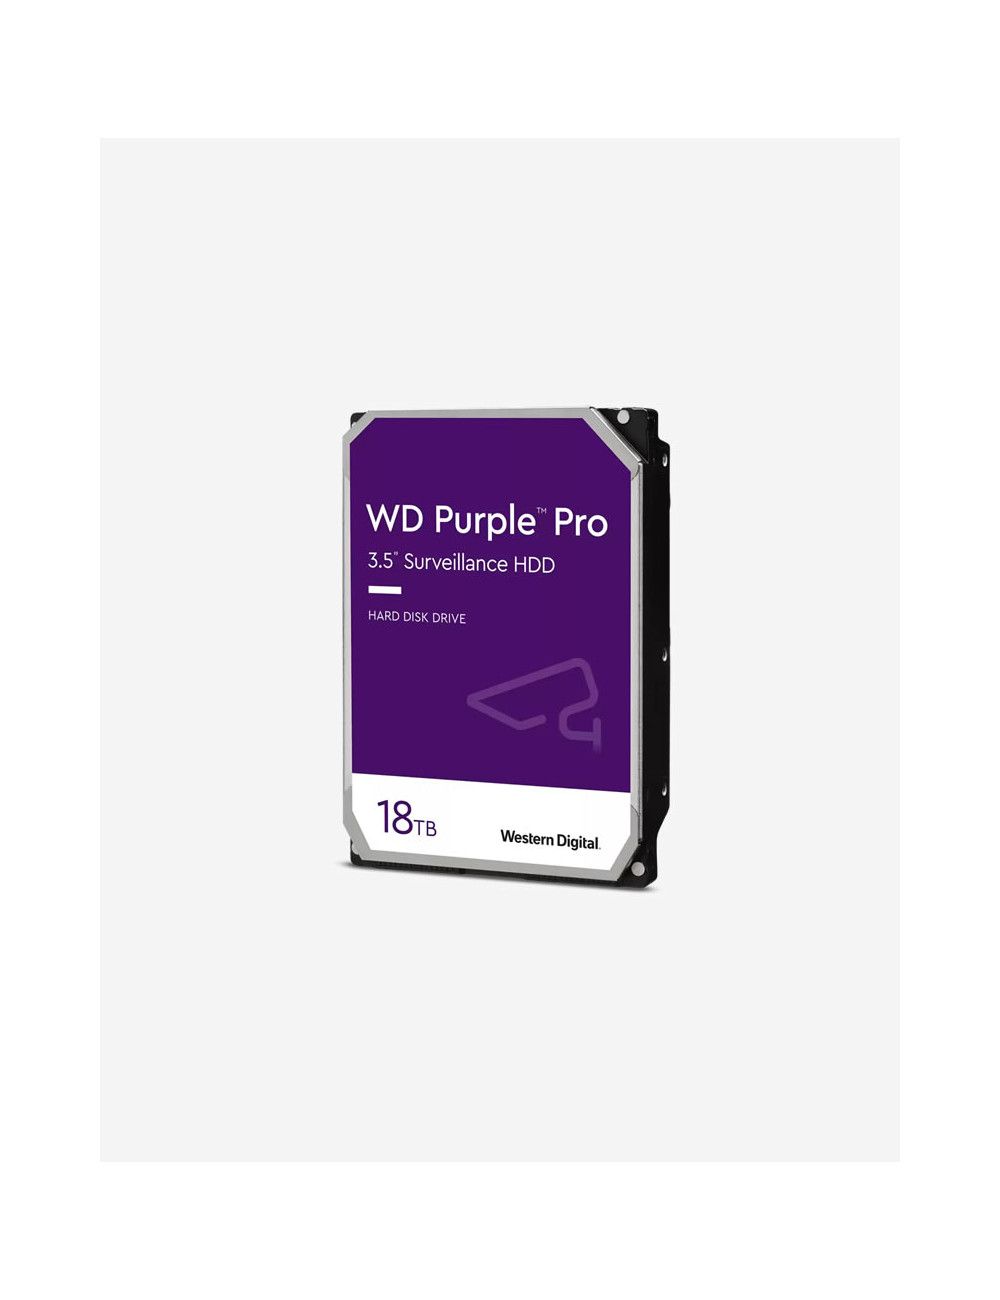 WD PURPLE PRO 18TB 3.5" HDD Drive